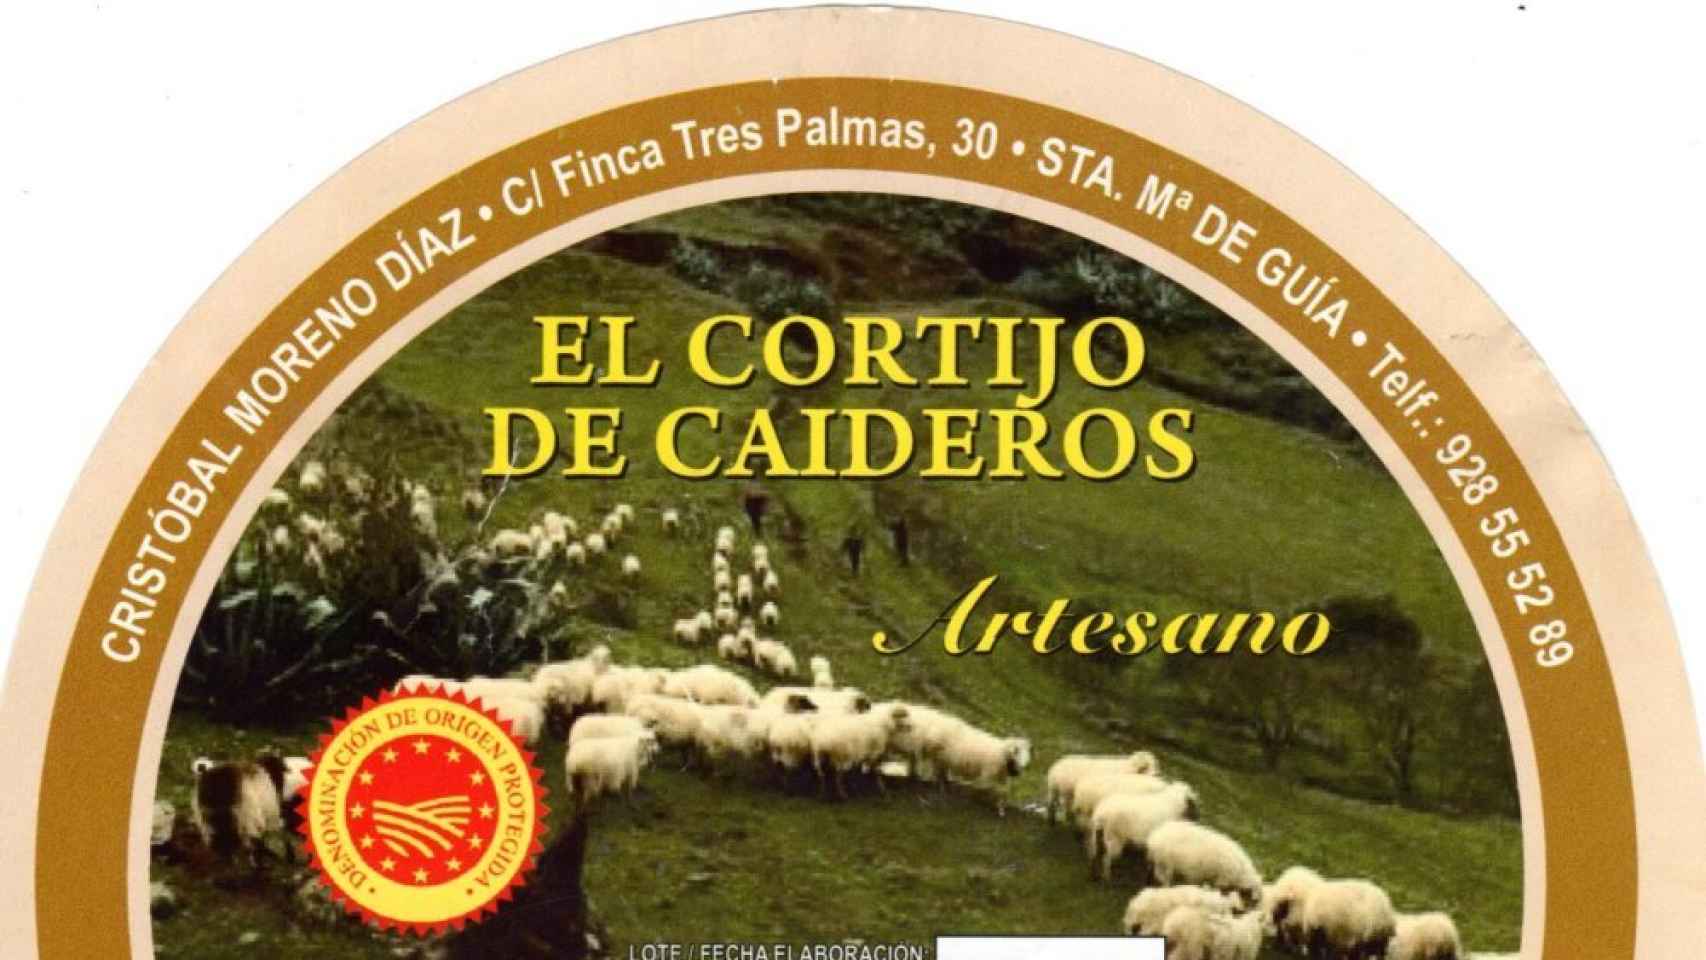 El queso El Cortijo de Caidero, con D.O. Flor de Guía.